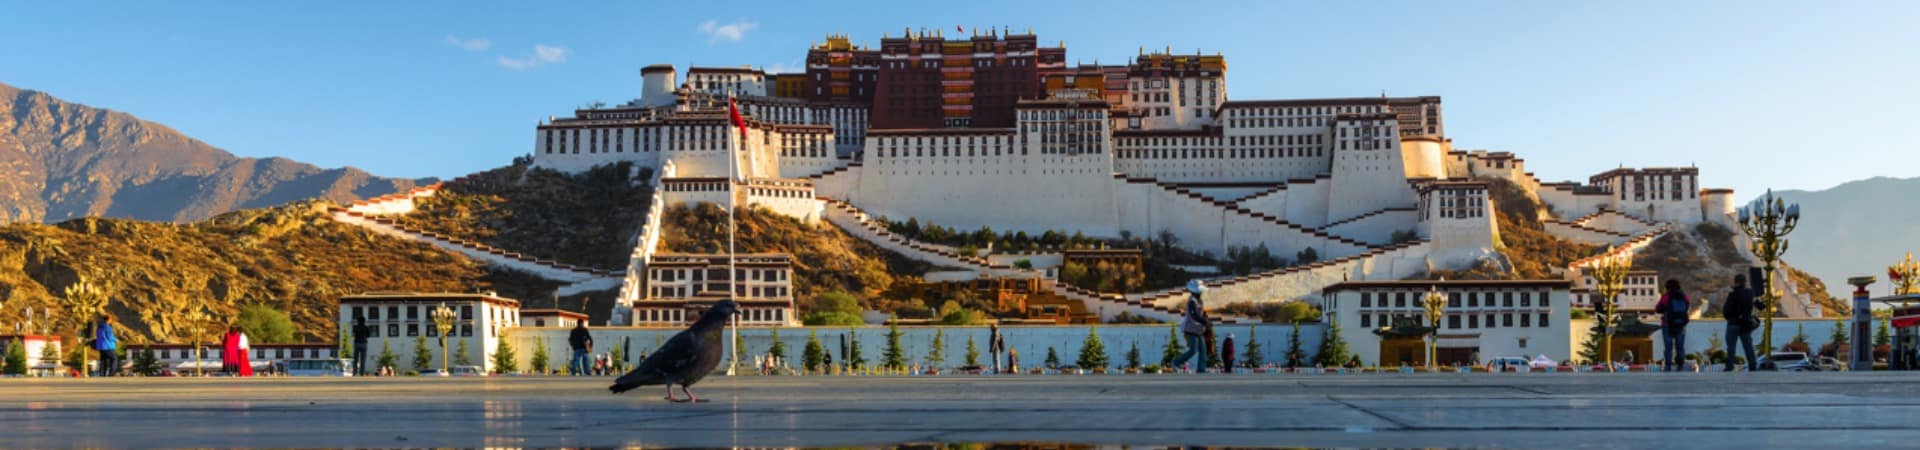 Atração turística: Palácio Potala, Tibete